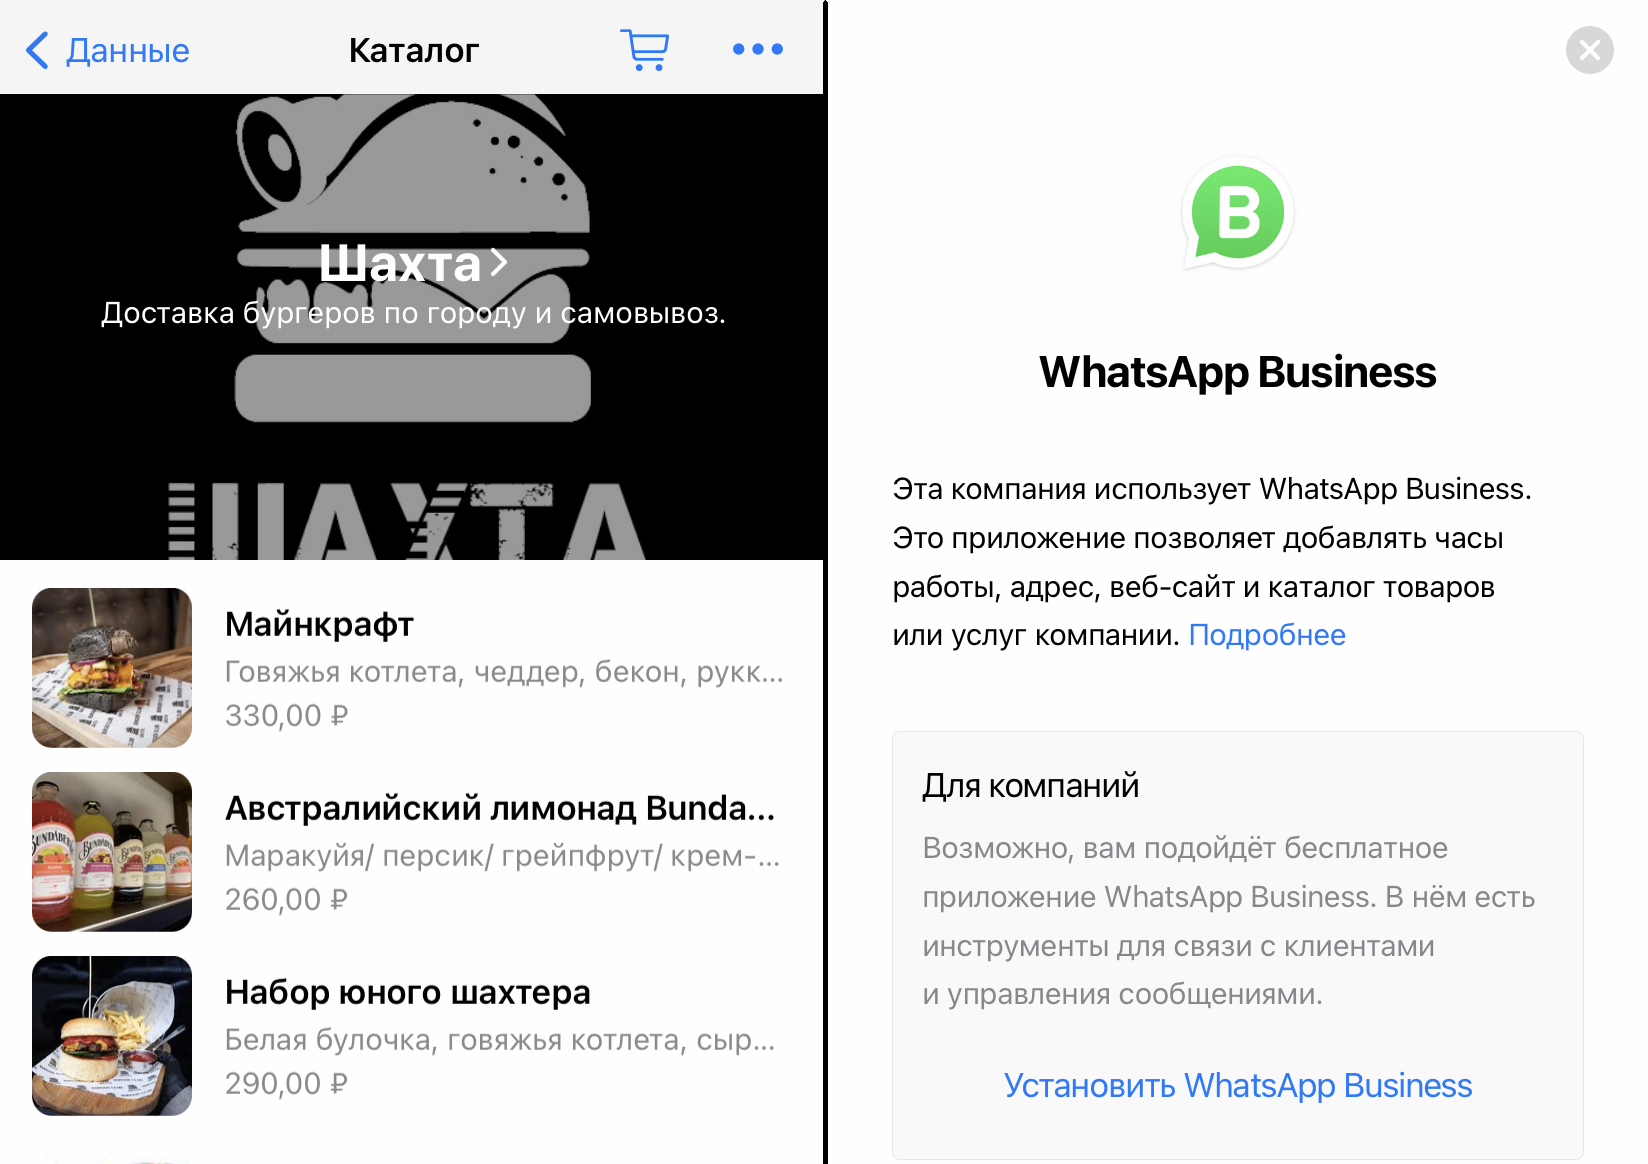 WhatsApp Business позволяет удобно организовать коммуникацию с клиентами в мессенджере